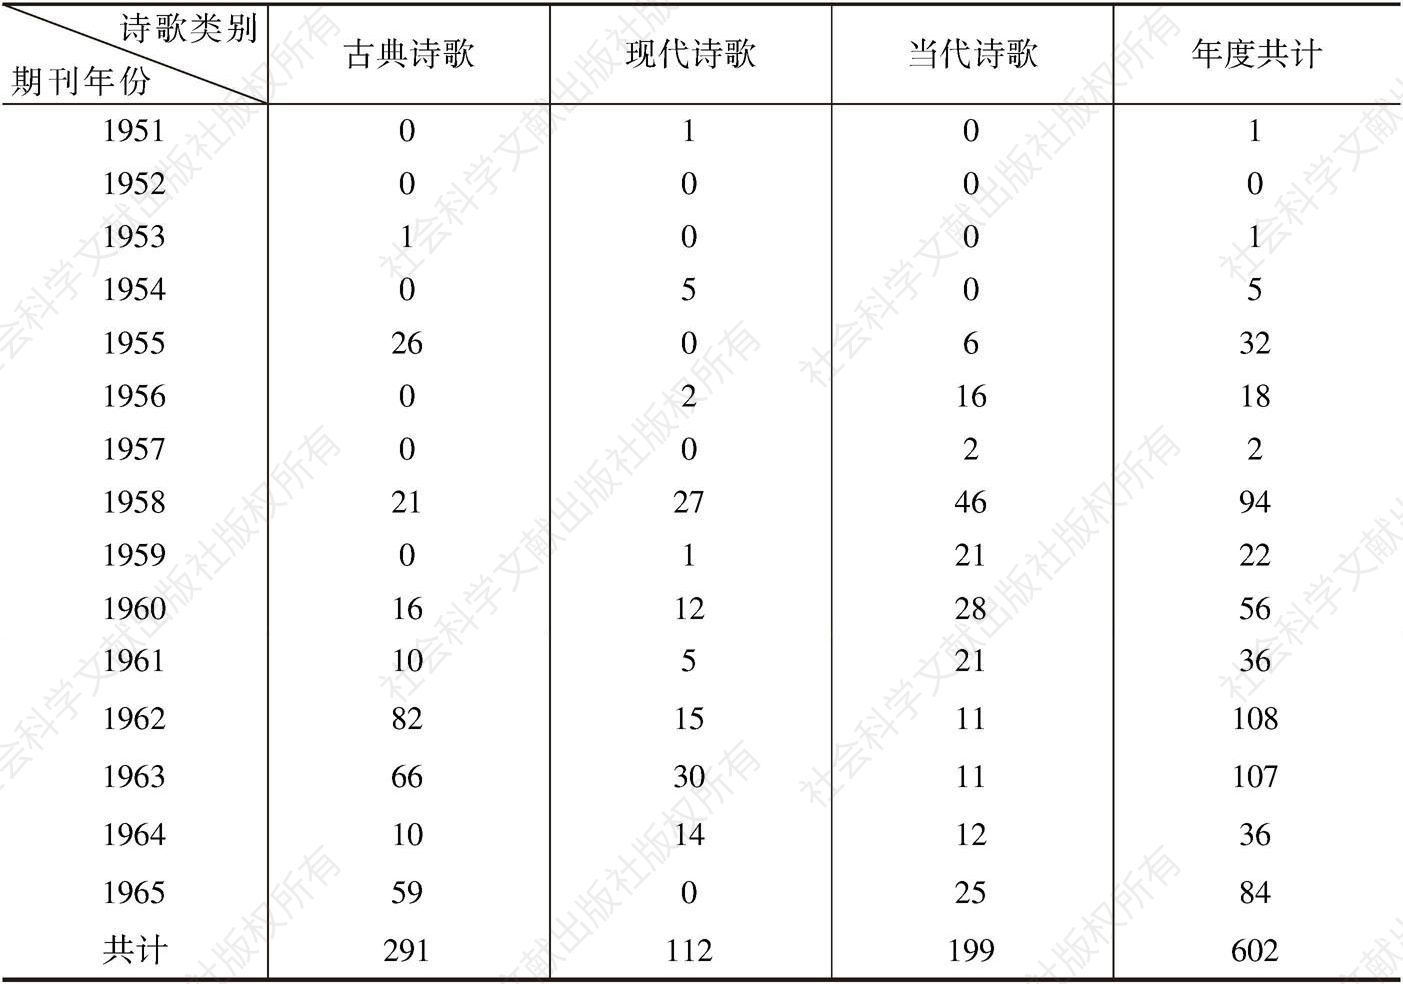 表3-1 1951～1965年《中国文学》诗歌作品选材统计